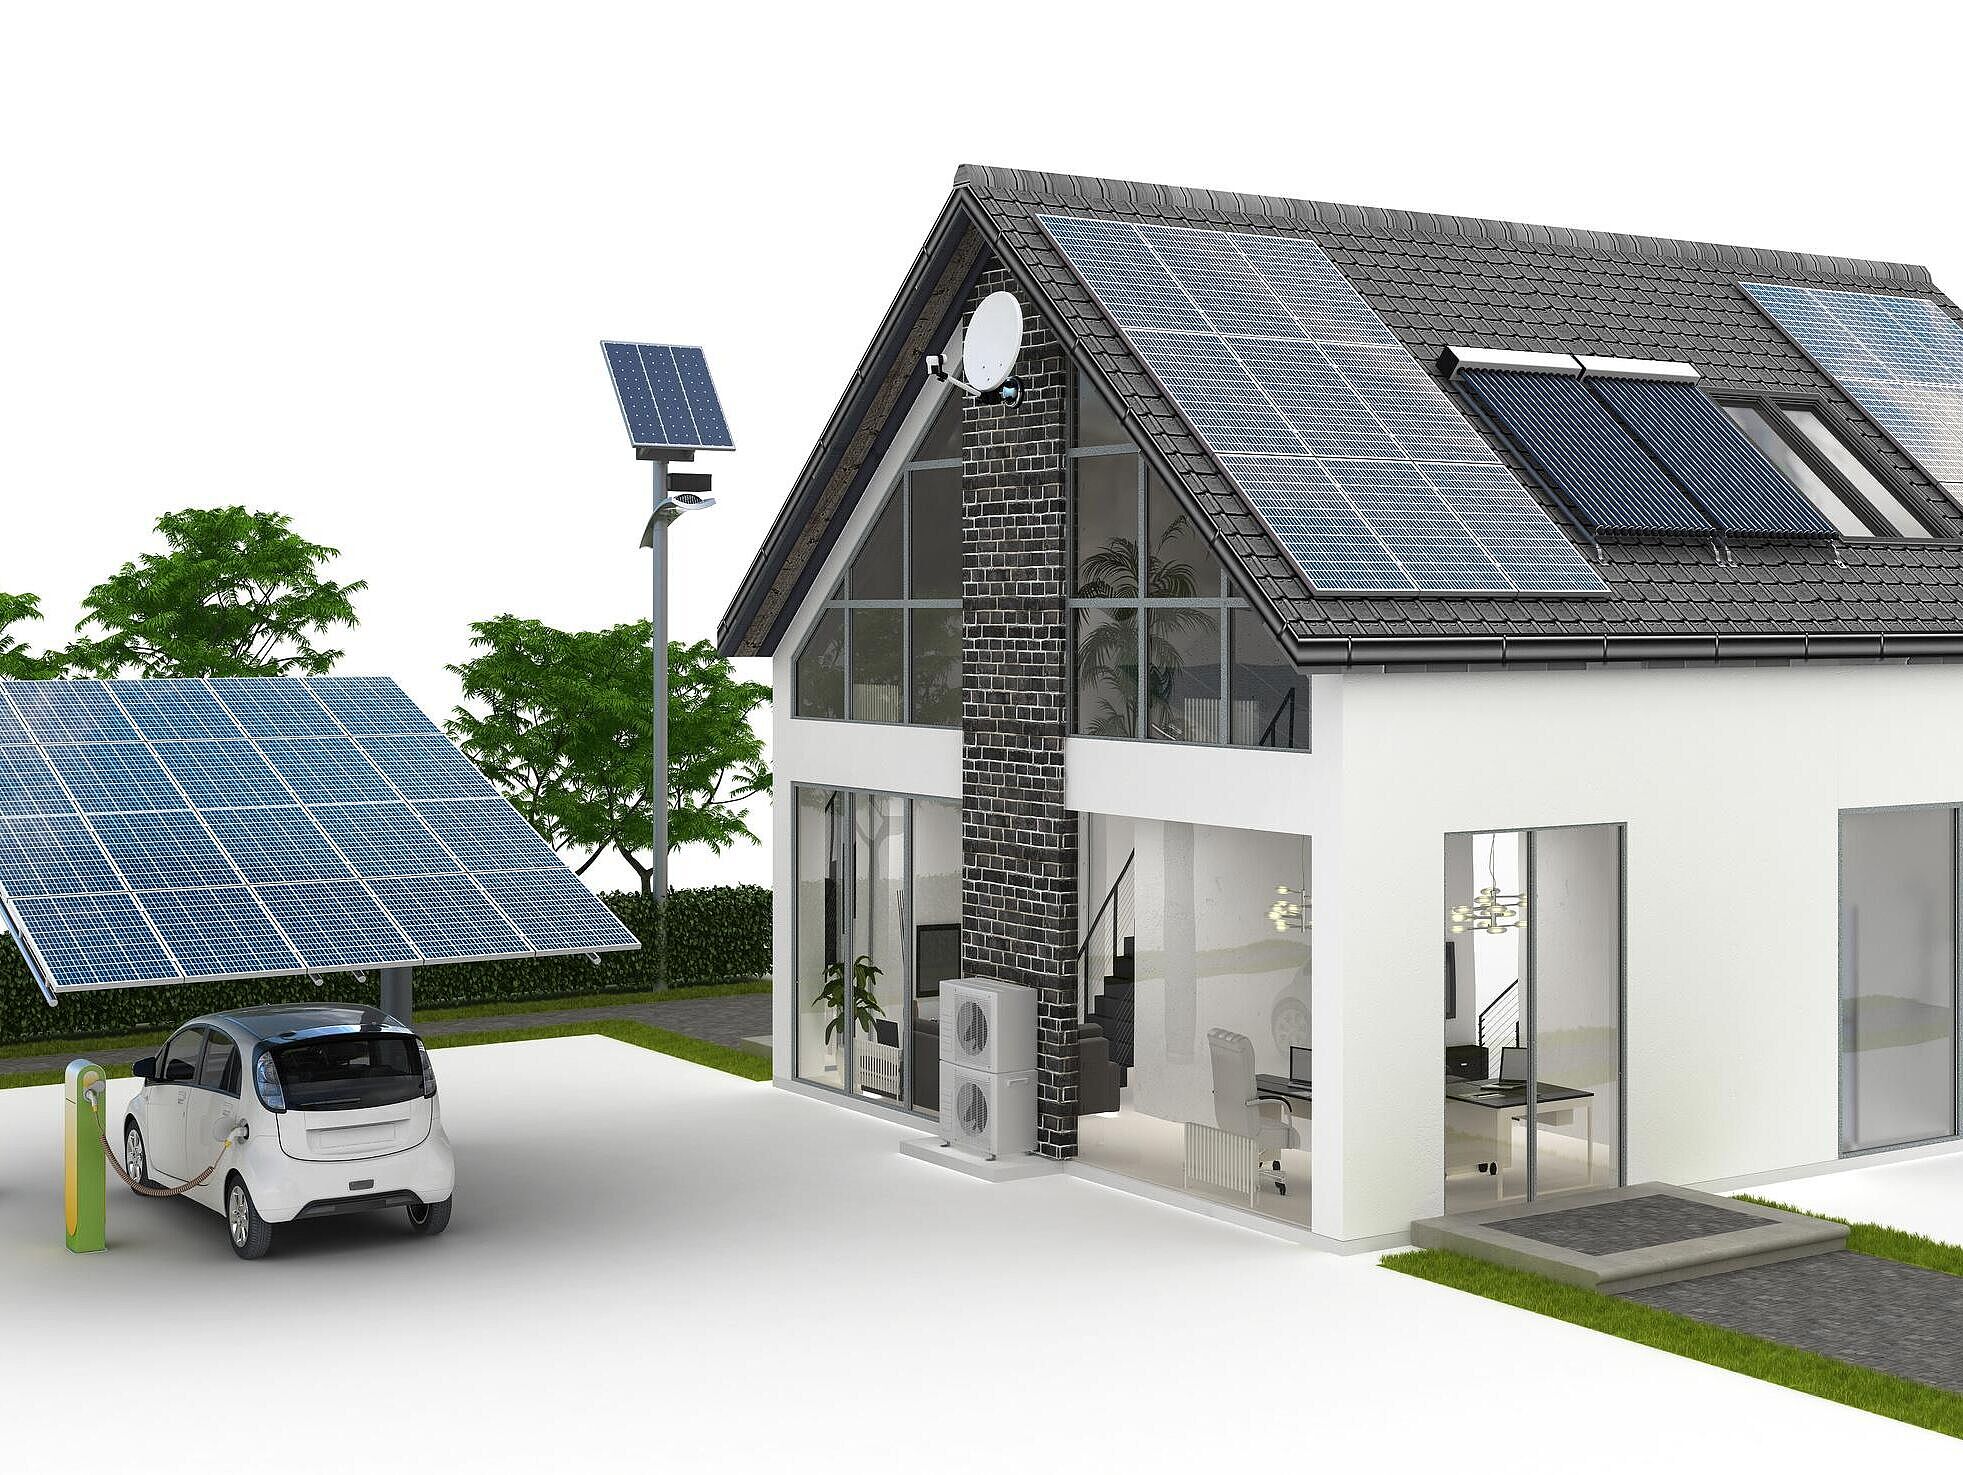 GRafische Zeichnung von einem Einfamilienhaus und einem Carport mit jeweils einer Photovoltaikanlage auf dem Dach. Im Carport steht ein Elektroauto.